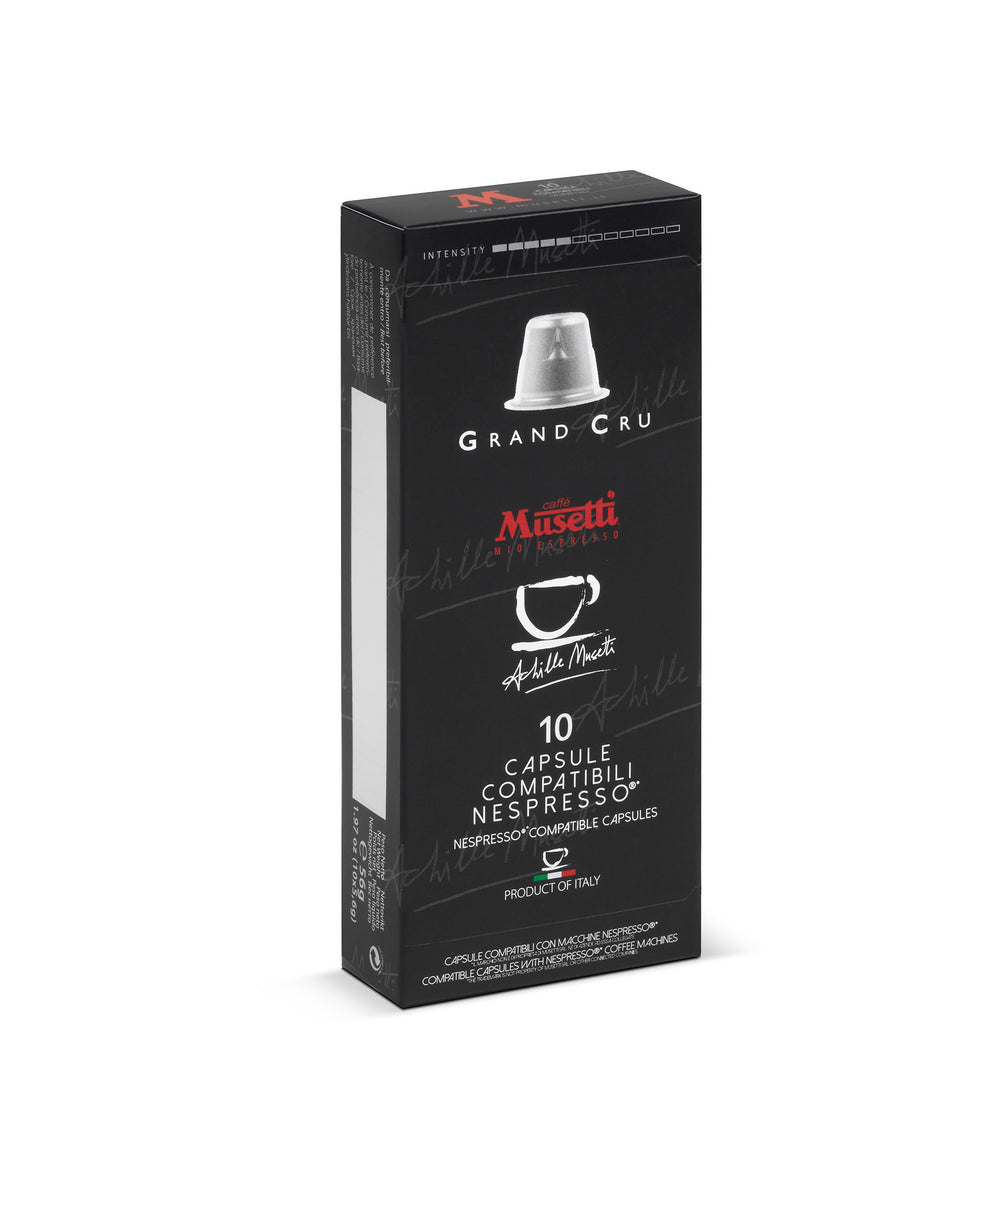 Nespresso® Compatible Capsules Grand Cru blend 10 pcs.